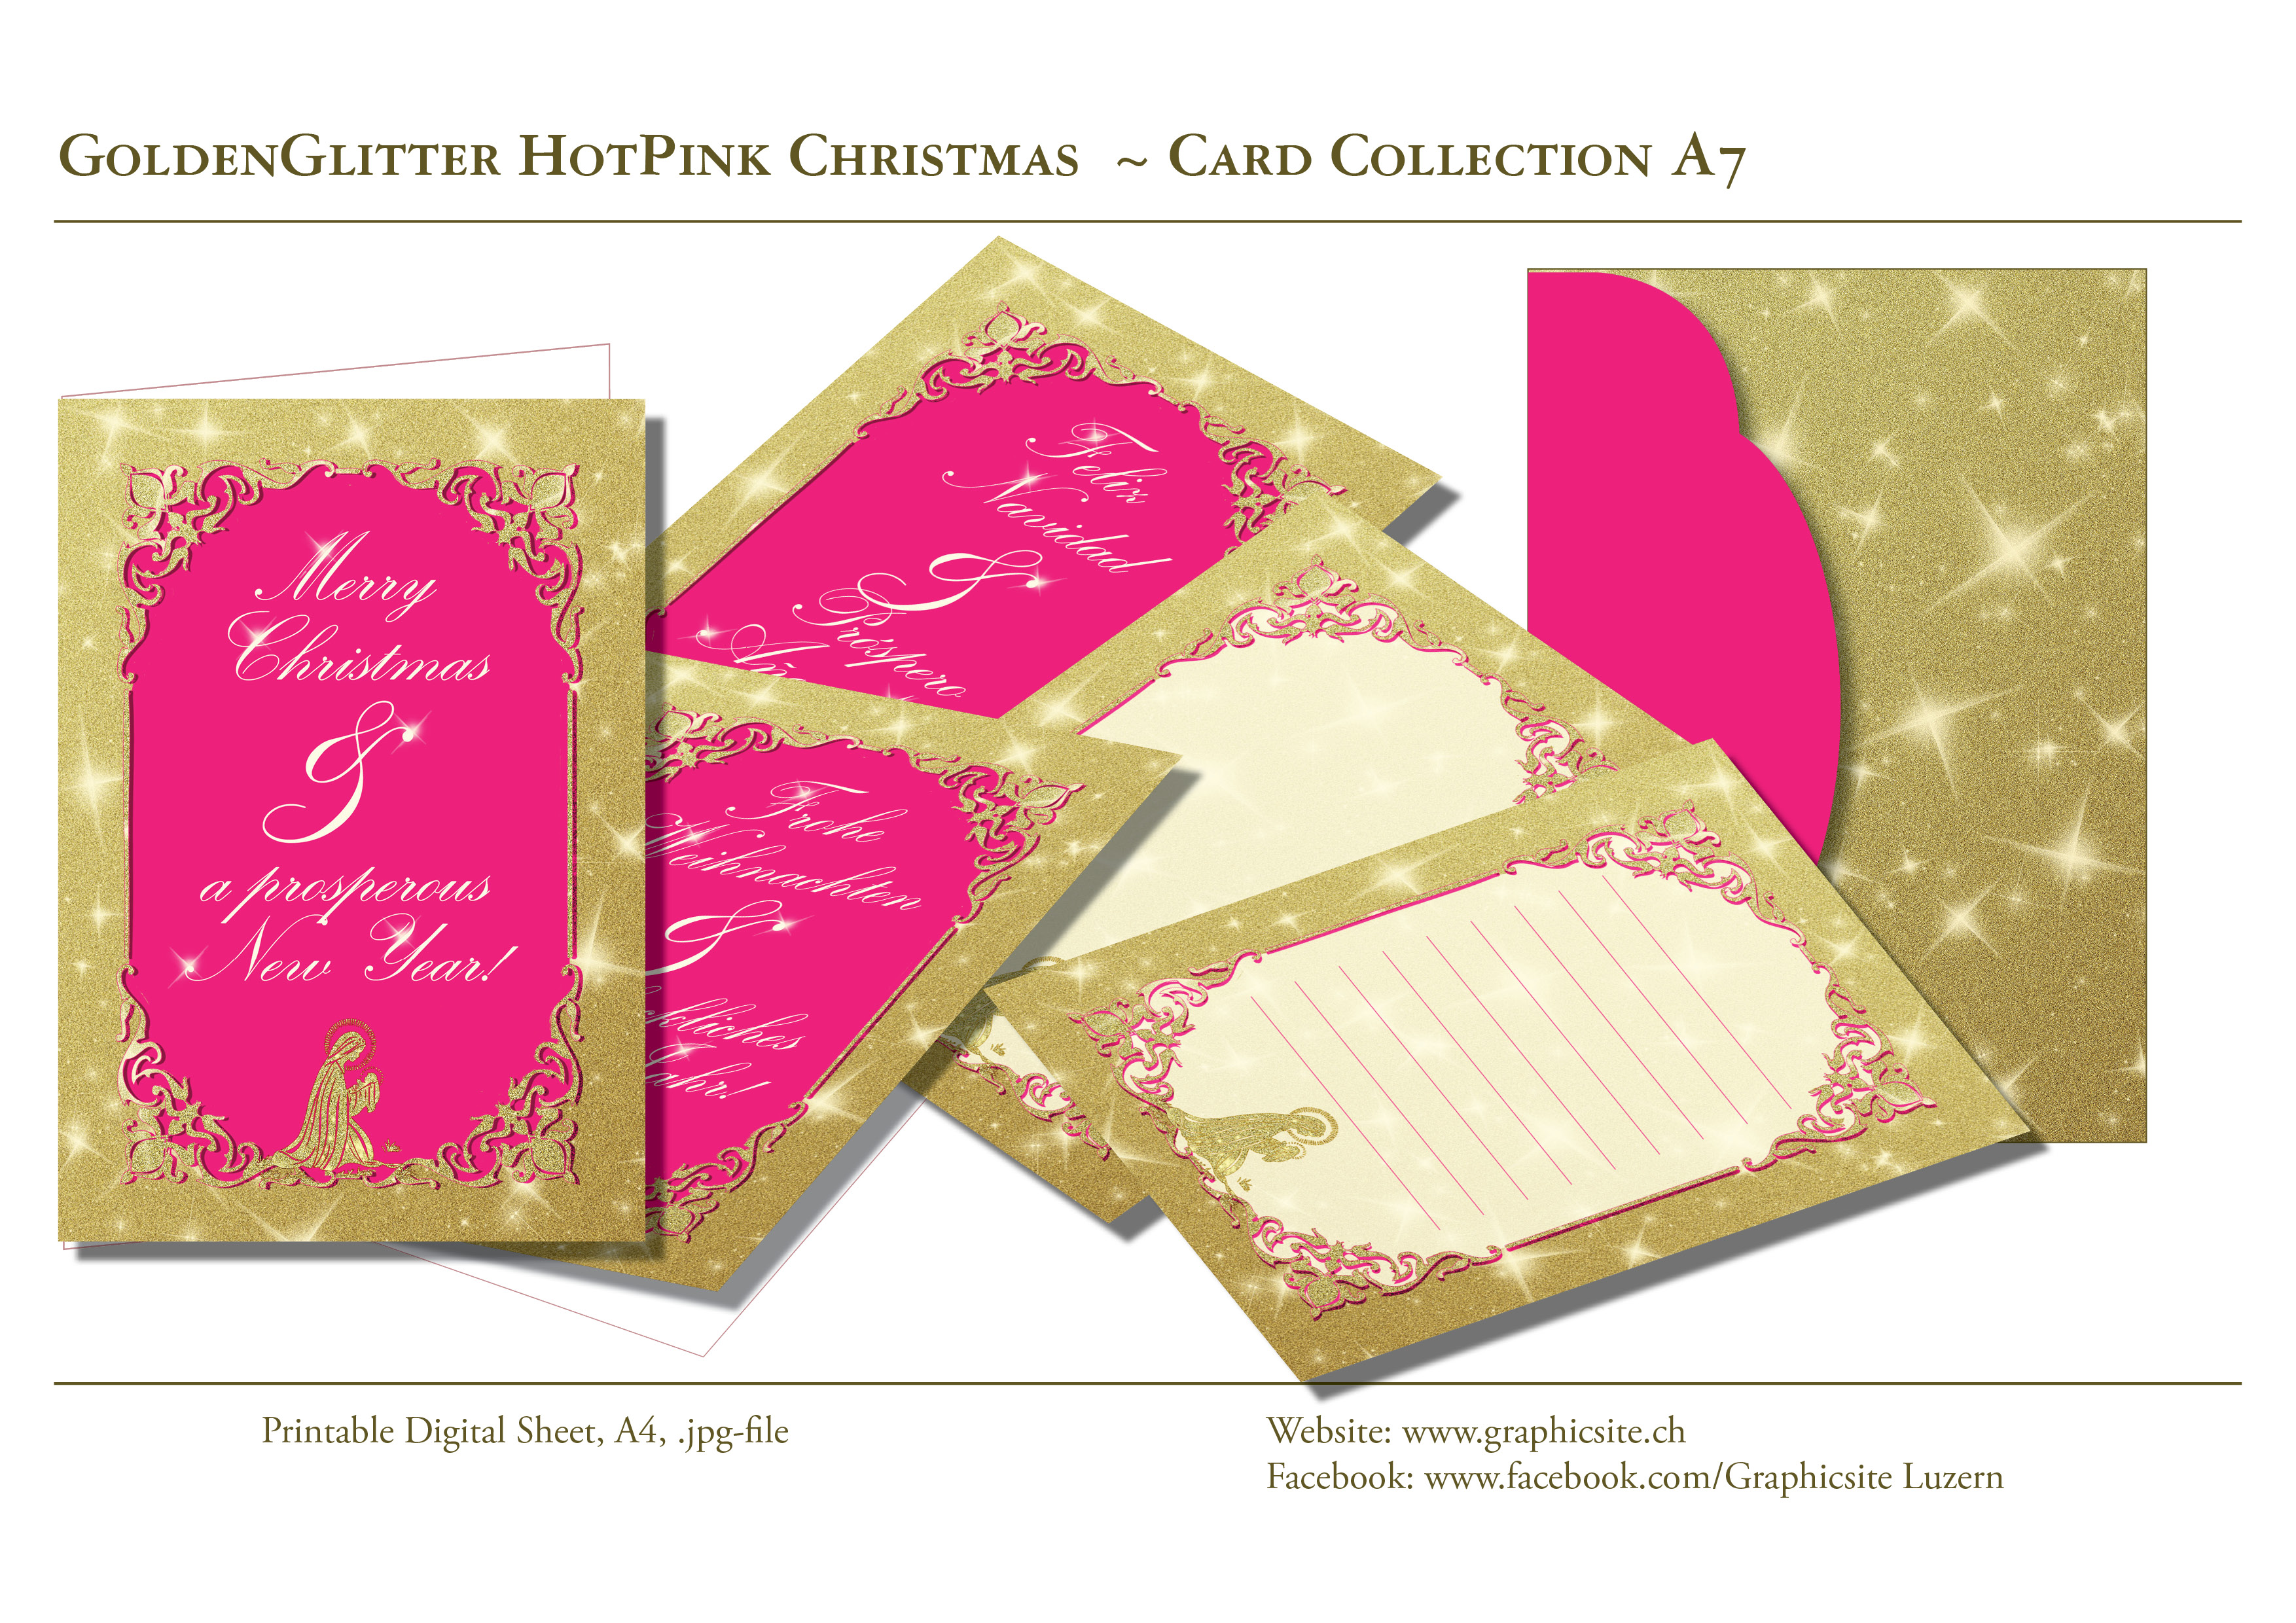 Karten selber drucken - Weihnachtskarten, Grusskarten, Gold, Pink,  -  Kuvert - #glitter, #weihnachtskarten, #karten, #selber, #drucken, #gestalten, #grusskarten, #basteln, #luzern, #schweiz